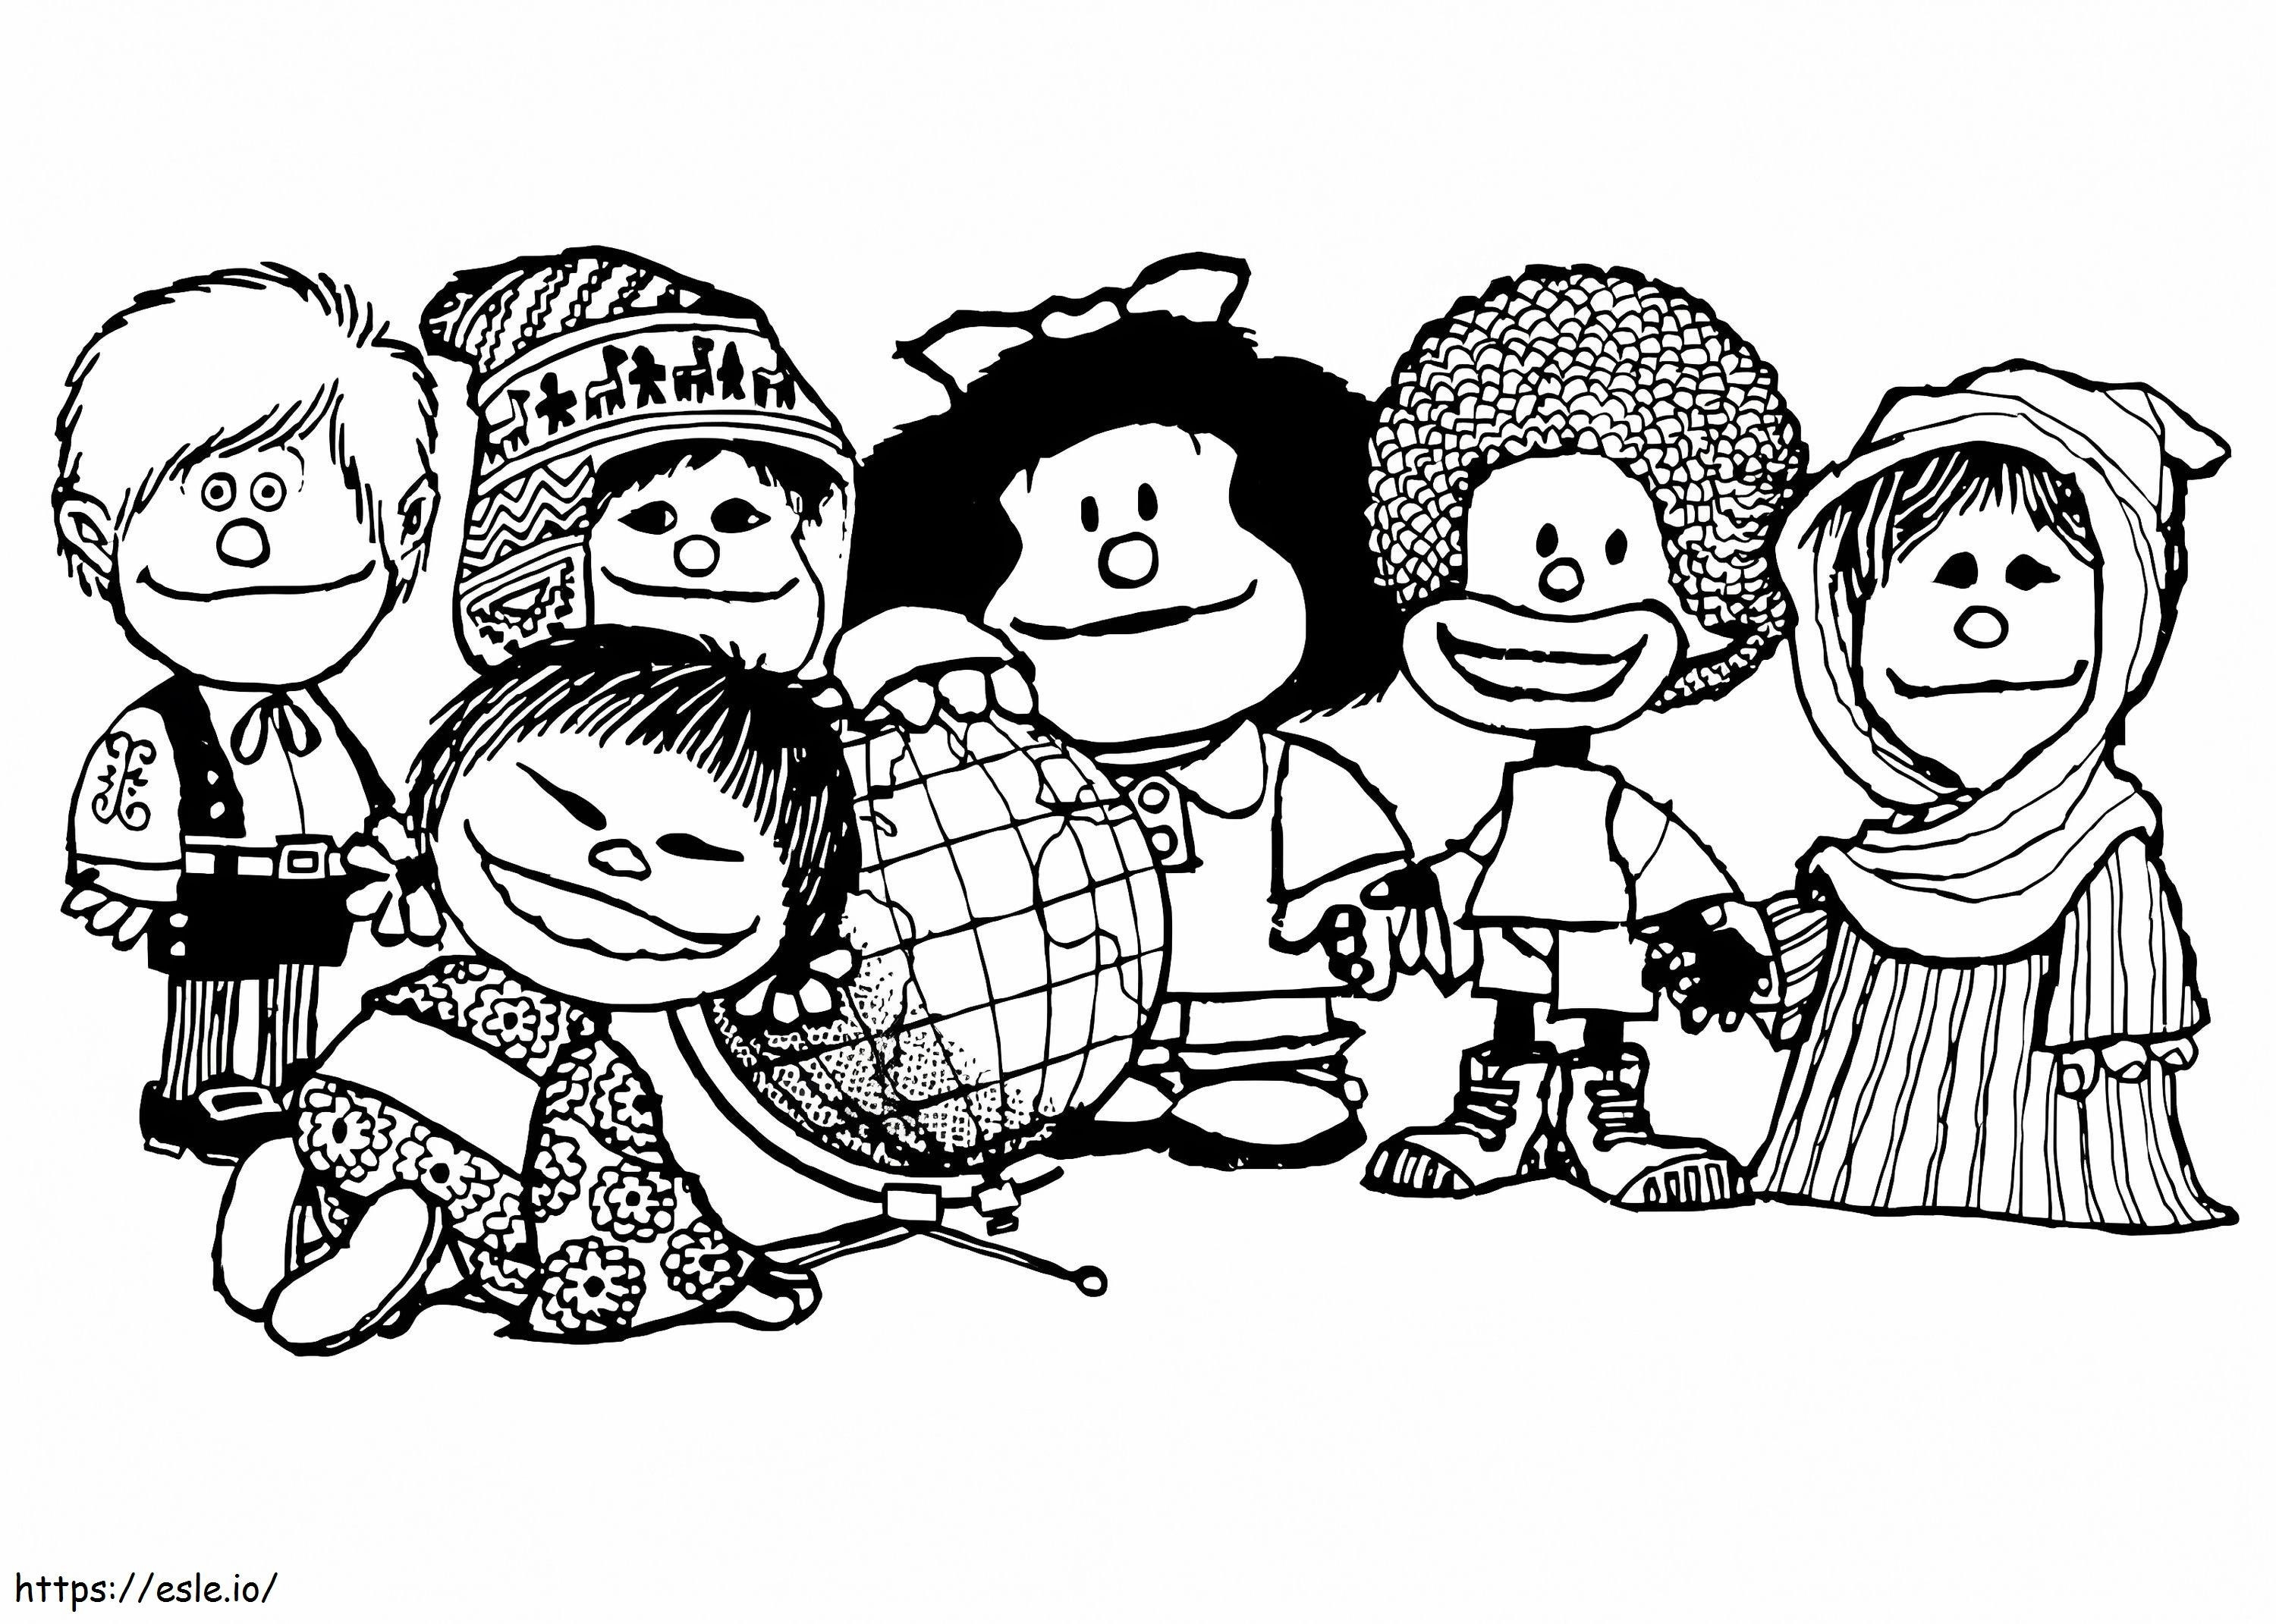 Arkadaşlarla Mafalda boyama